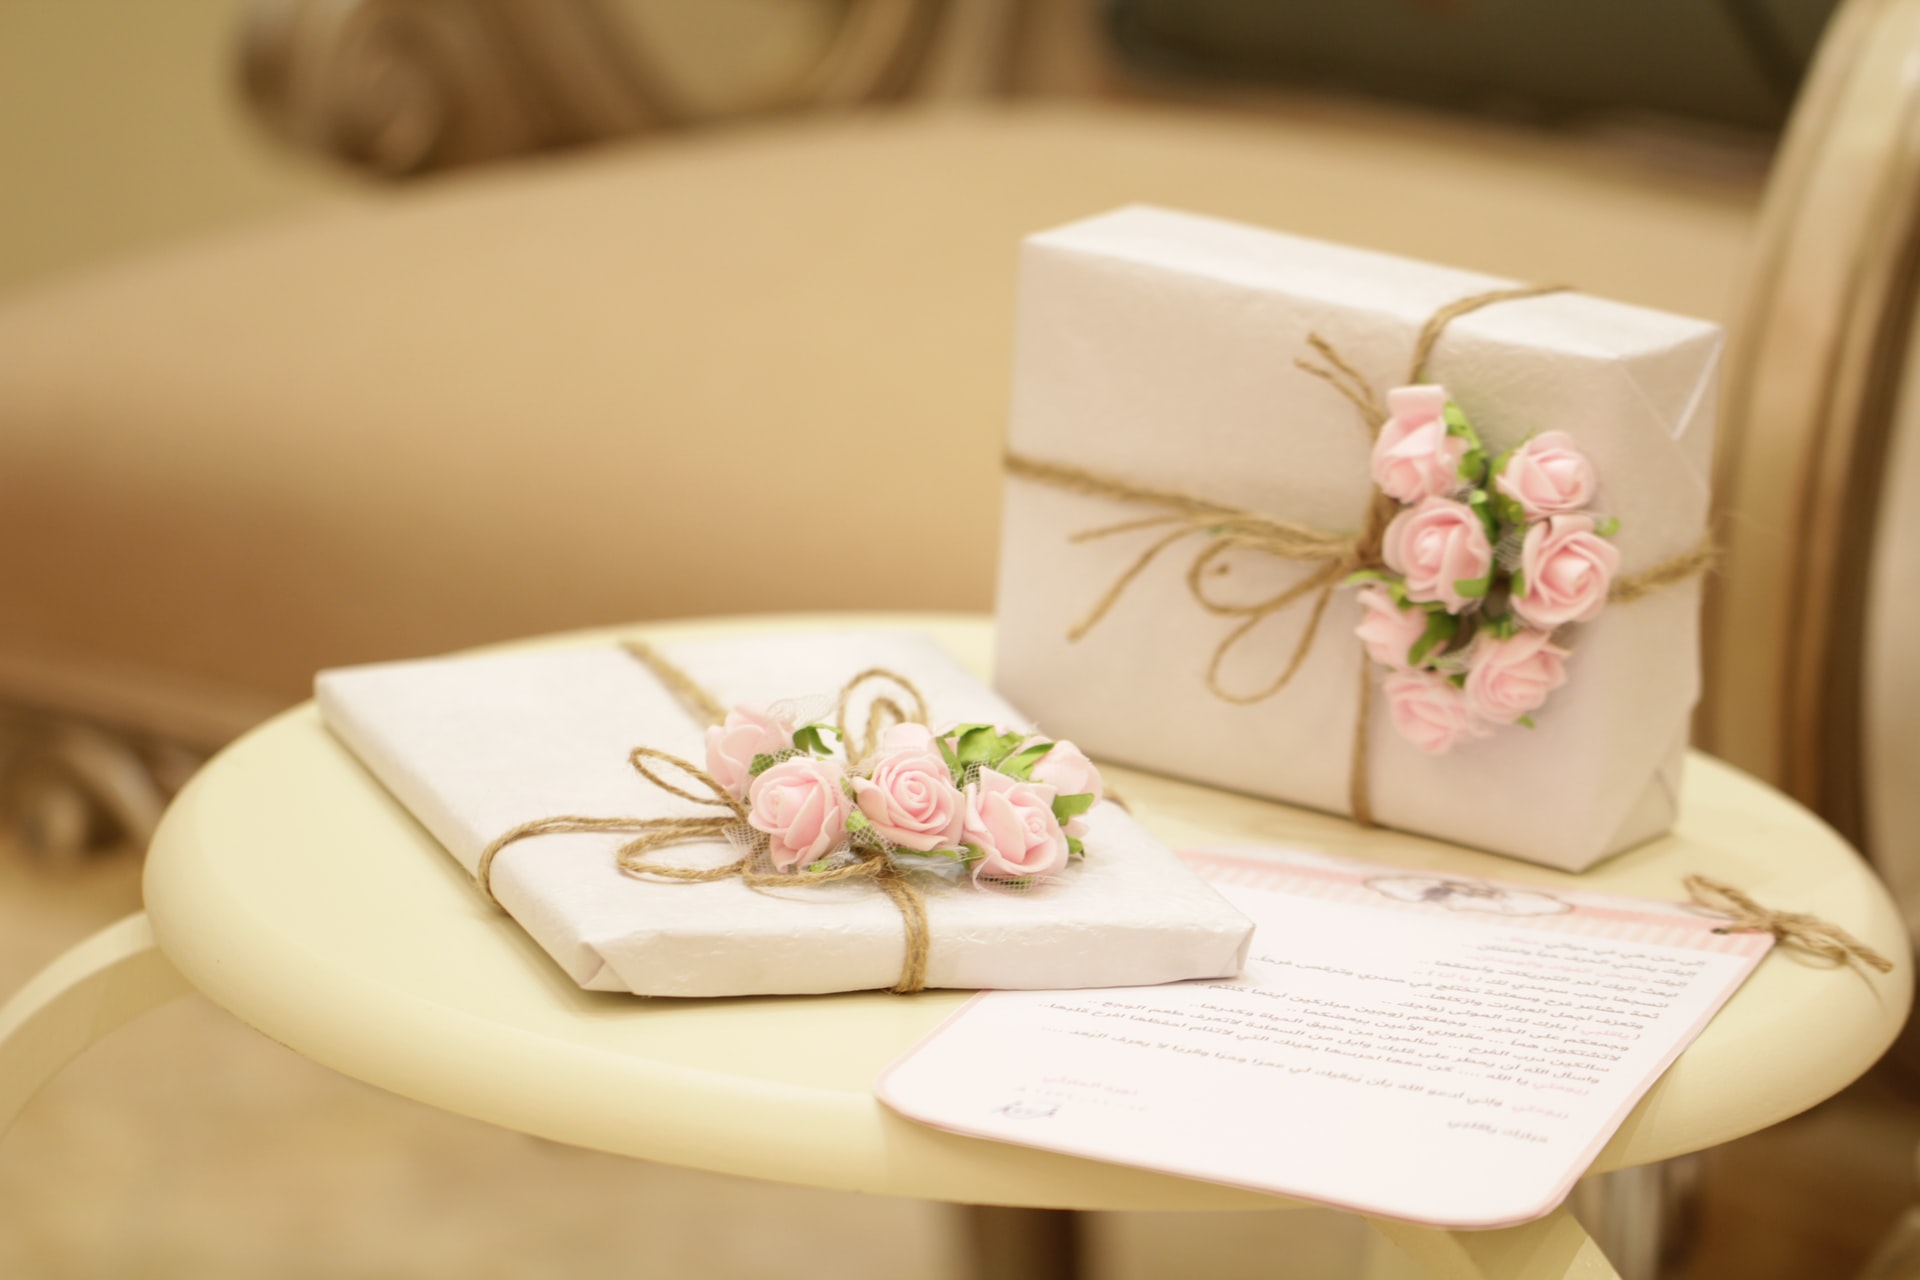 To gaver med blomster på, på et bord